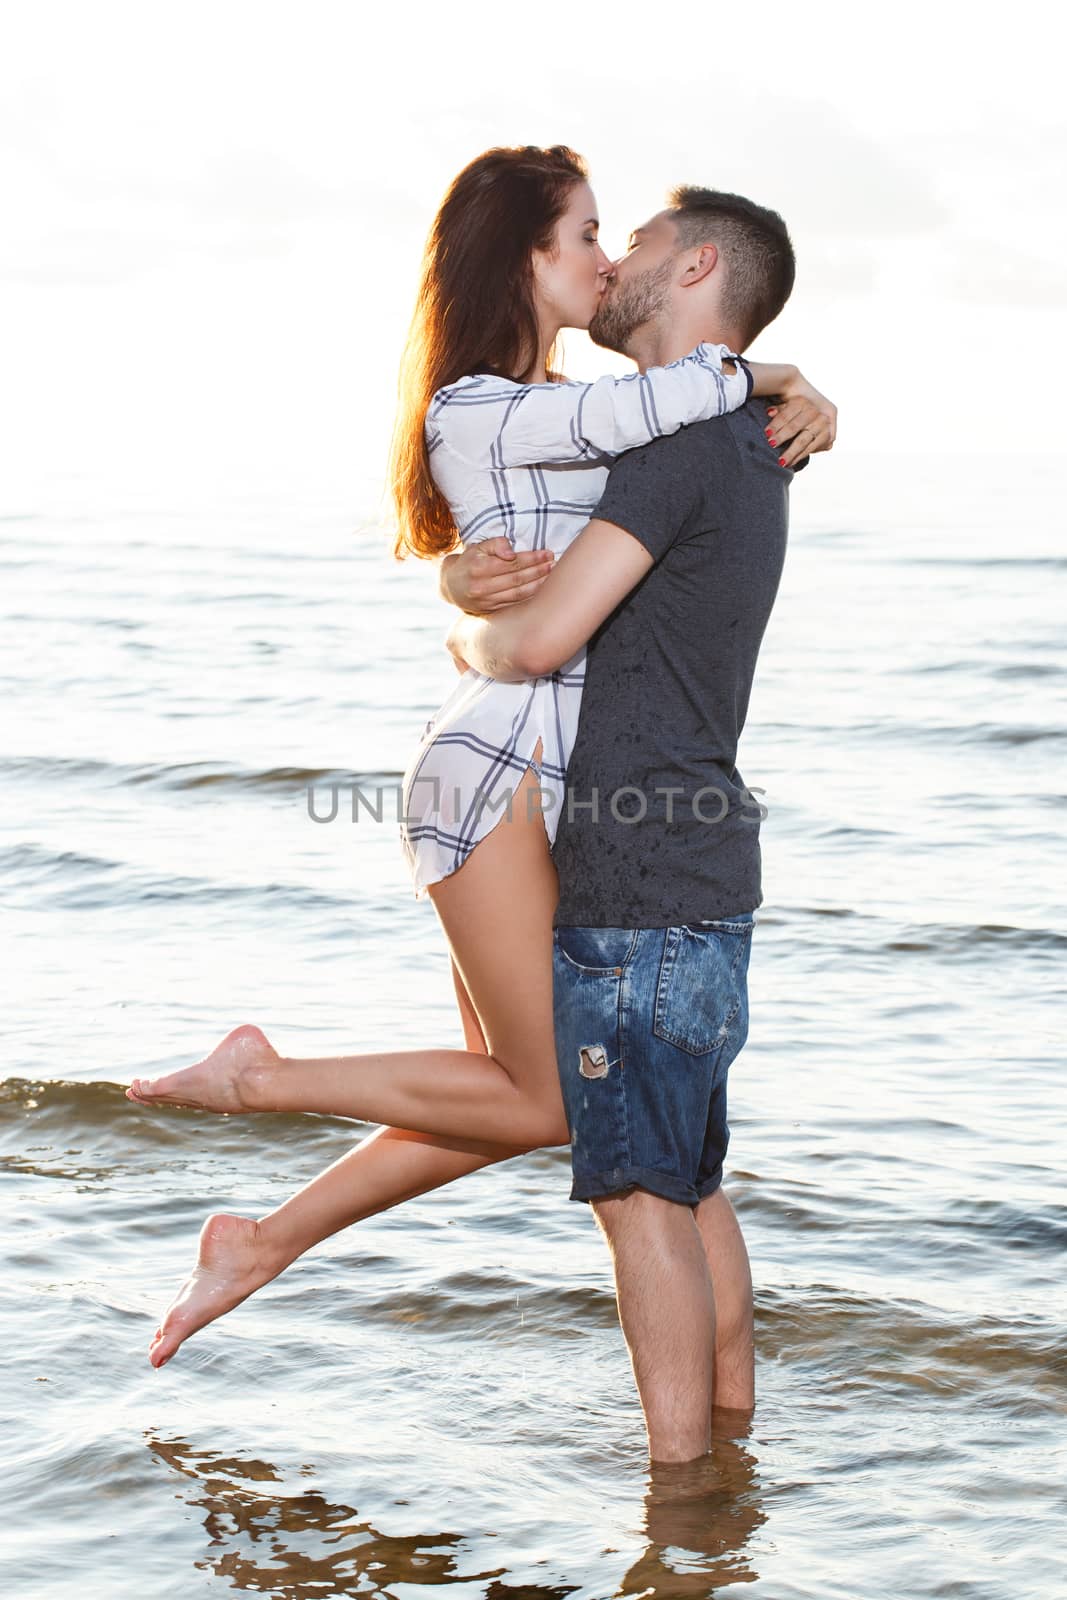 Beautiful couple on the beach by rufatjumali